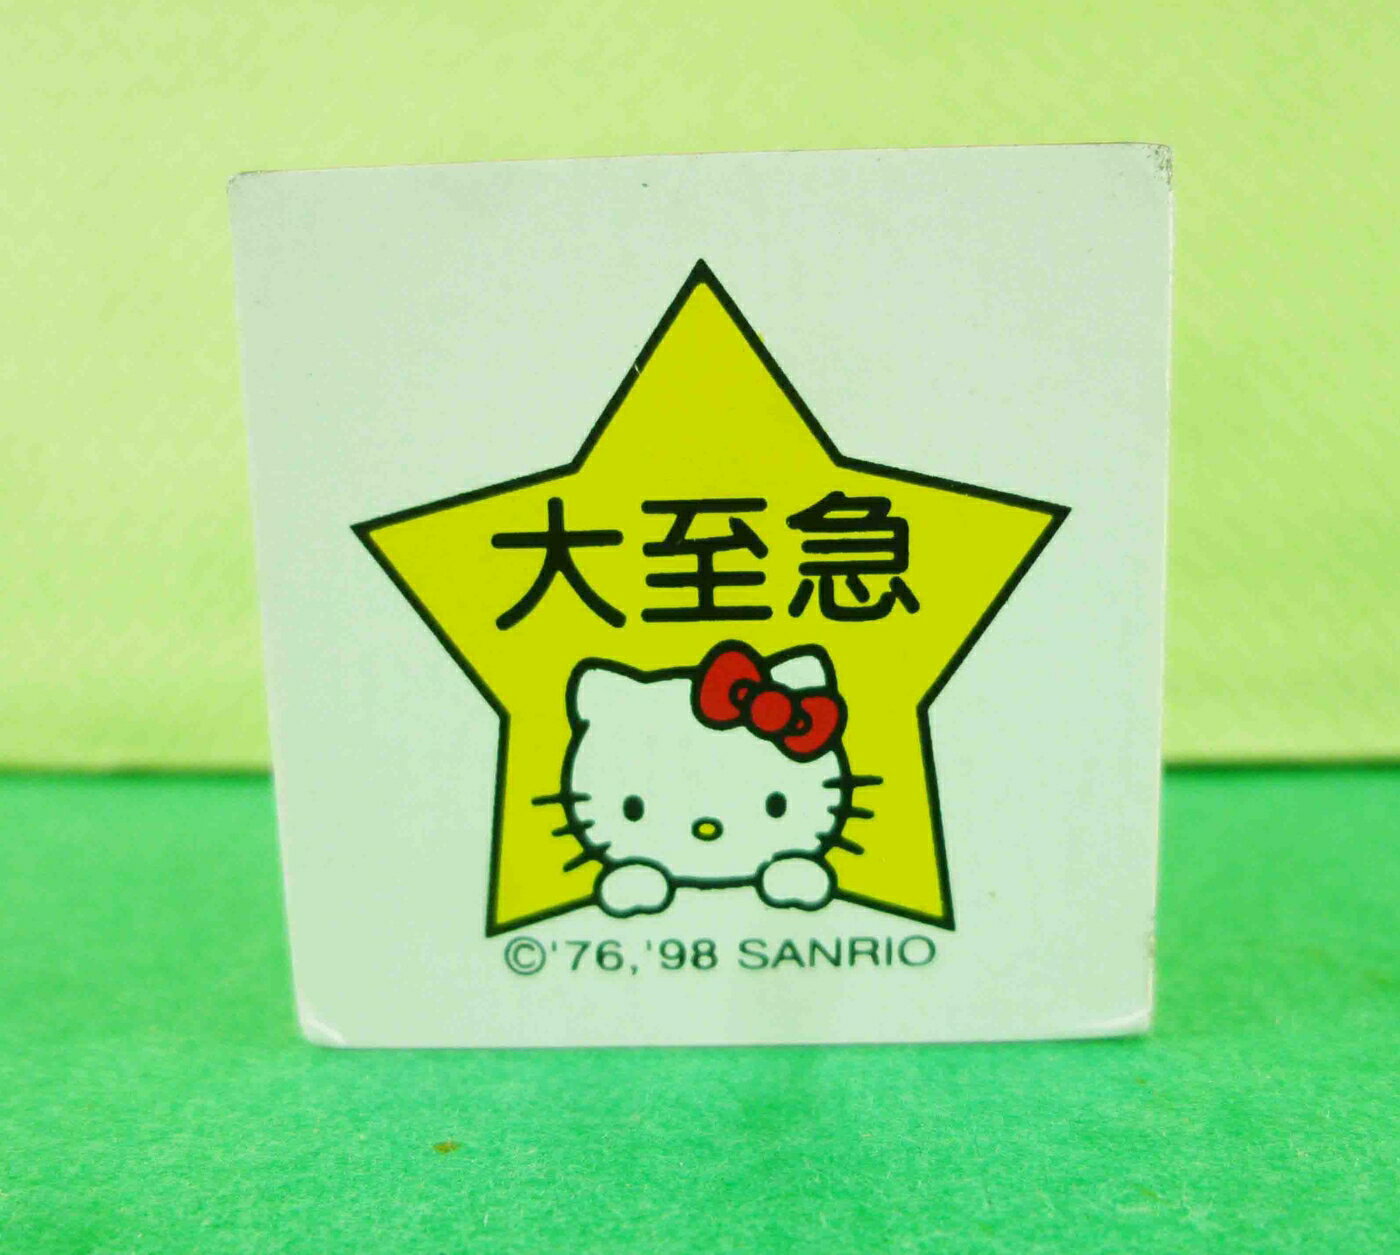 【震撼精品百貨】Hello Kitty 凱蒂貓 KITTY木製印章-大至急圖案 震撼日式精品百貨